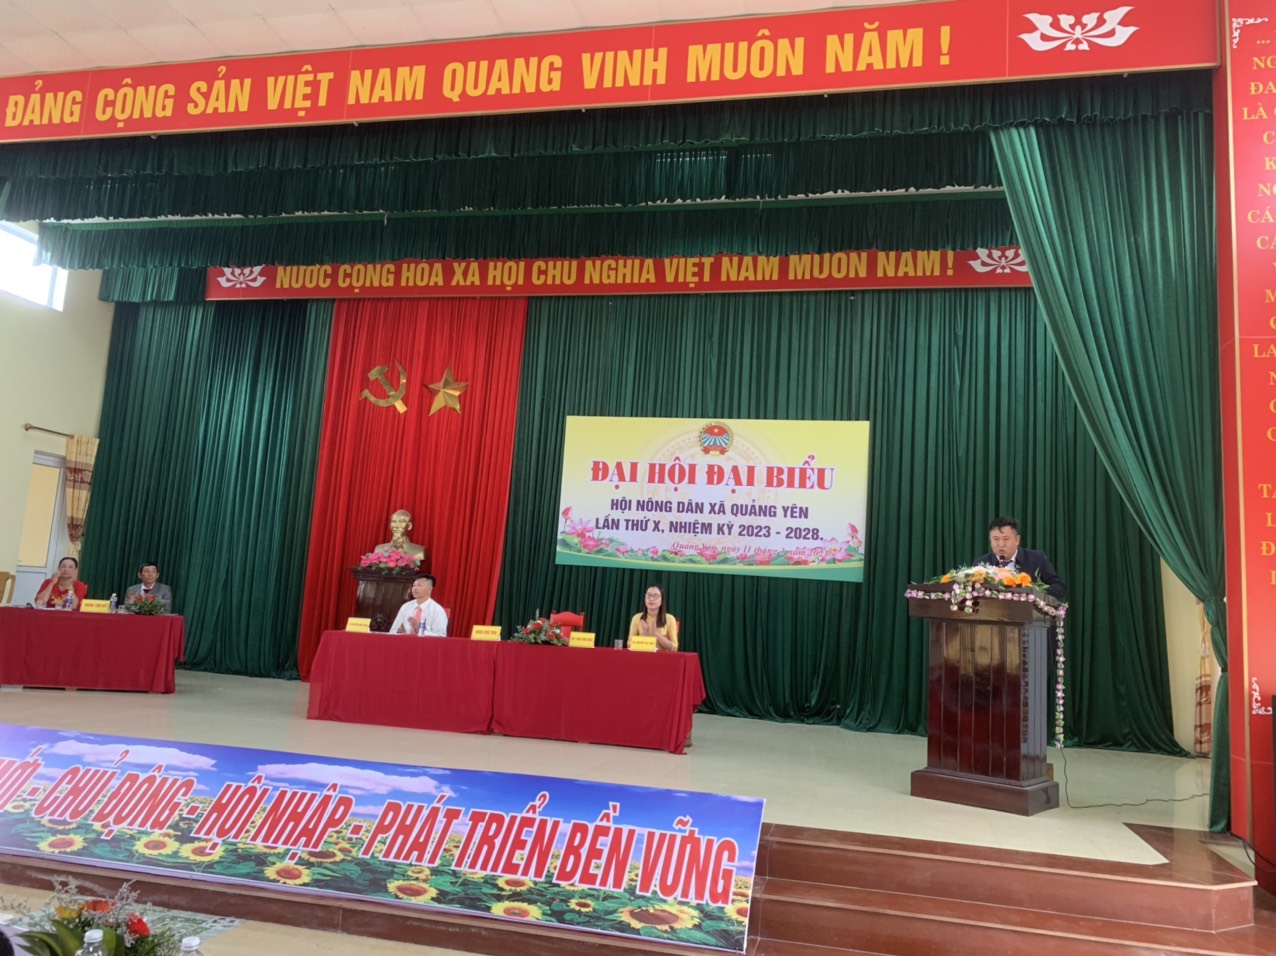 Đại hội Đại biểu Hội Nông dân xã Quảng Yên lần thứ X nhiệm kỳ 2023-2028